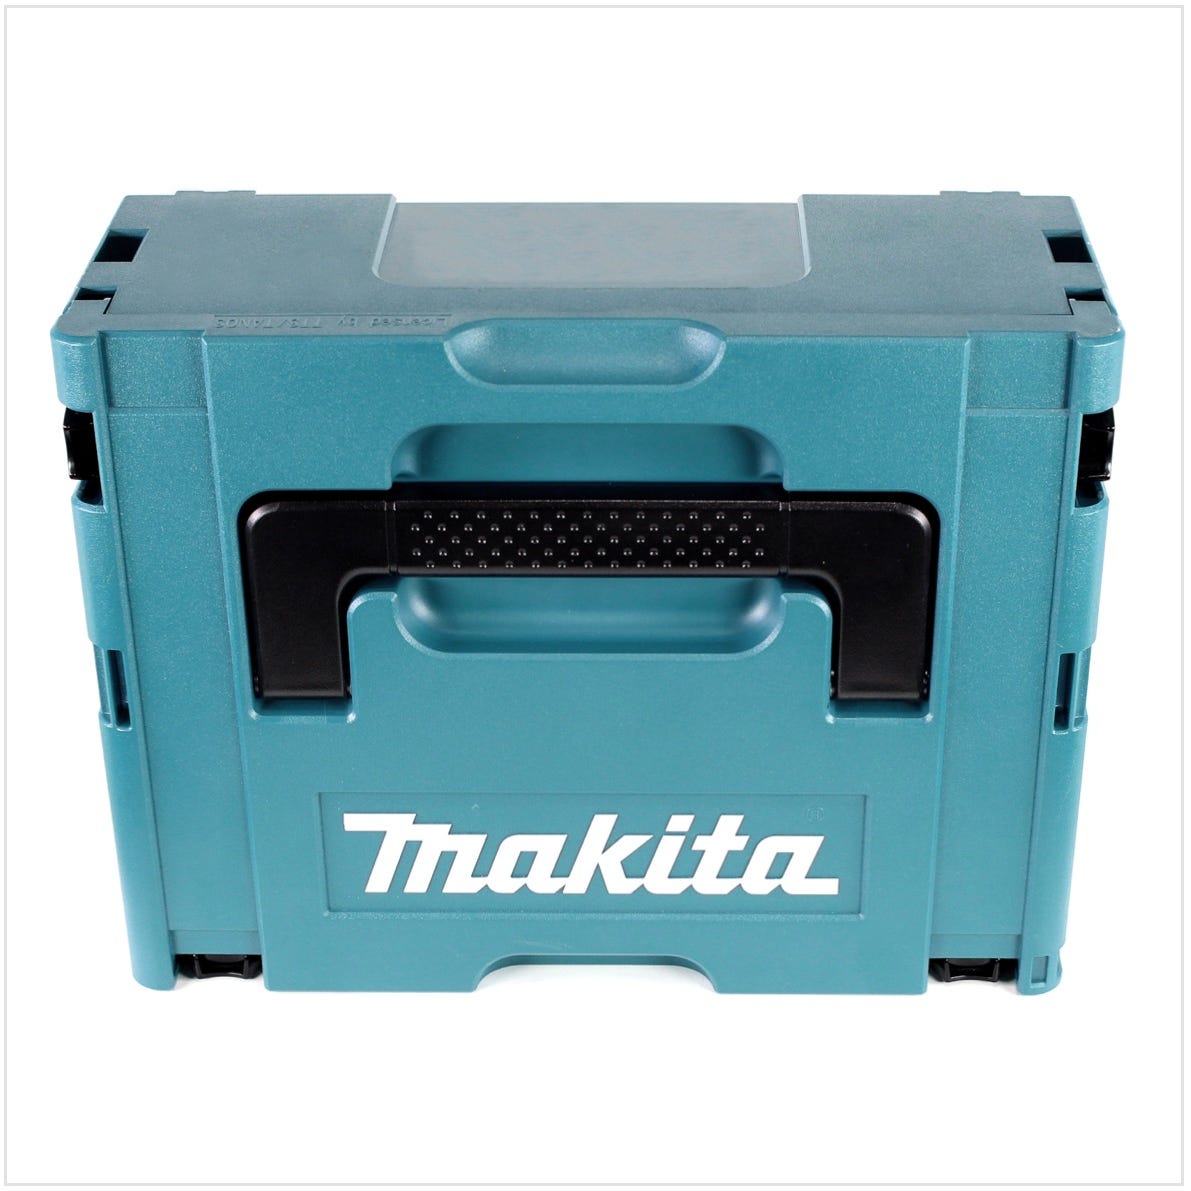 Makita DTW 1001 RFJ 18 V Li-Ion Brushless Boulonneuse à chocs sans fil avec Boîtier Makpac + 2x Batteries BL 1830 3,0 Ah + Chargeur rapide DC 18 RC 2